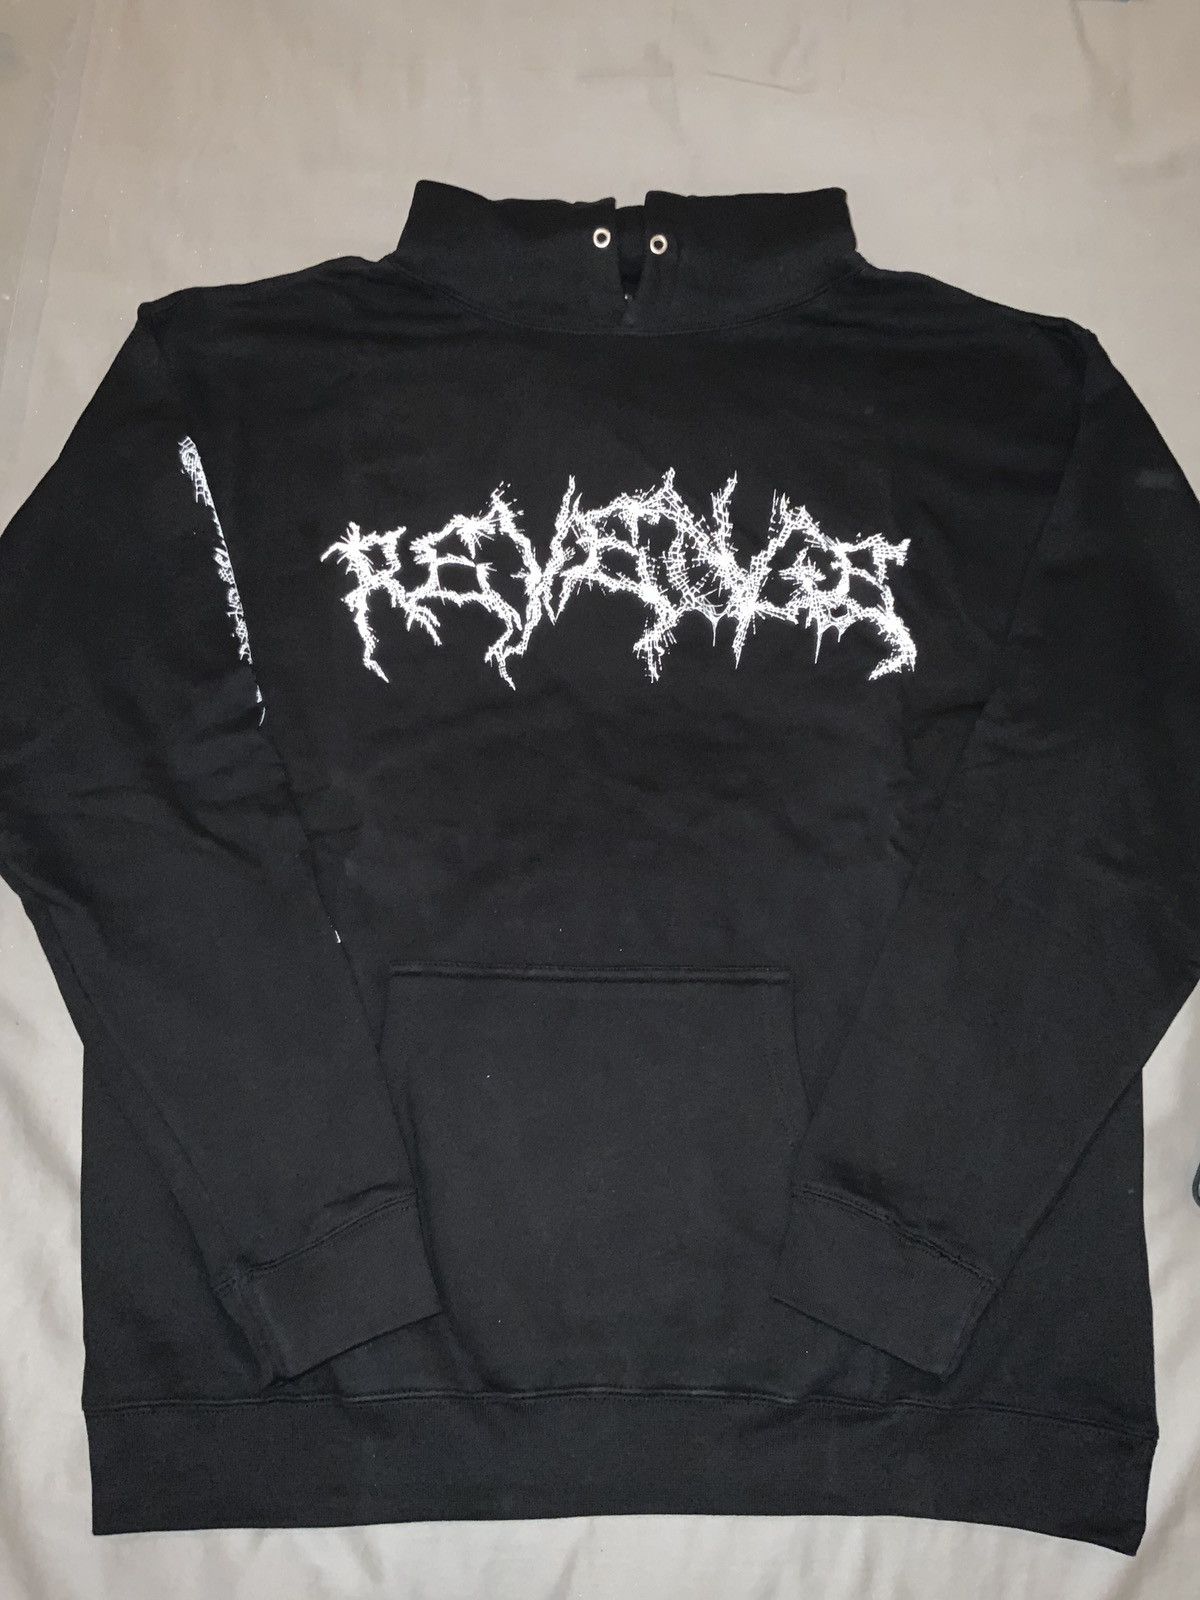 Revenge Revenge hoodie brand new | Grailed